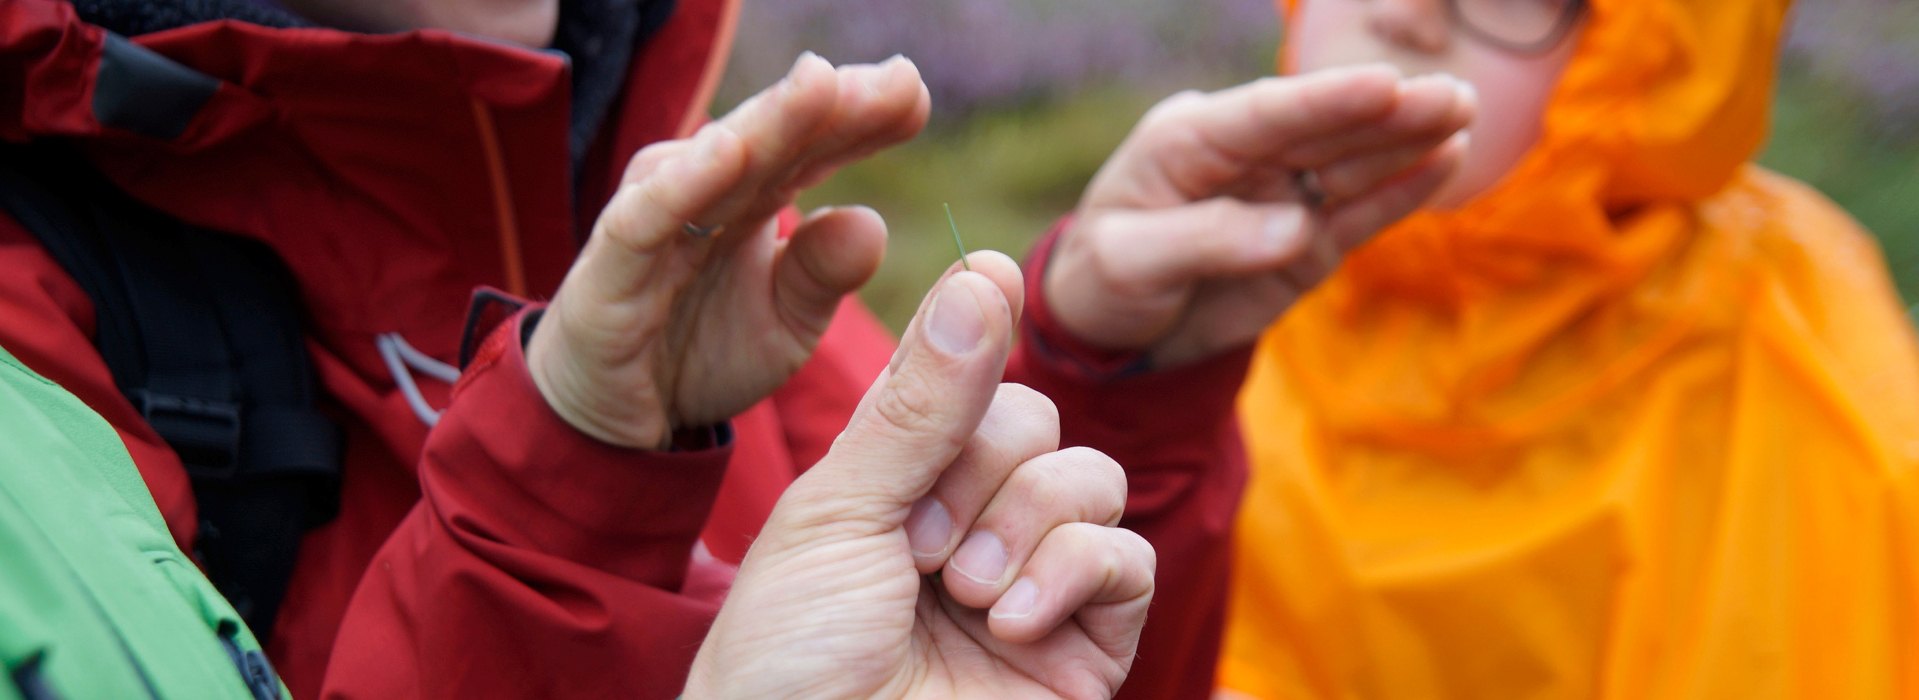 Zwei Hände deuten eine schützende Gebärde an über einer weiteren Hand, die zwischen zwei Fingern eine Tannennadel hält. Foto: Daniel Müller (Nationalpark Schwarzwald)